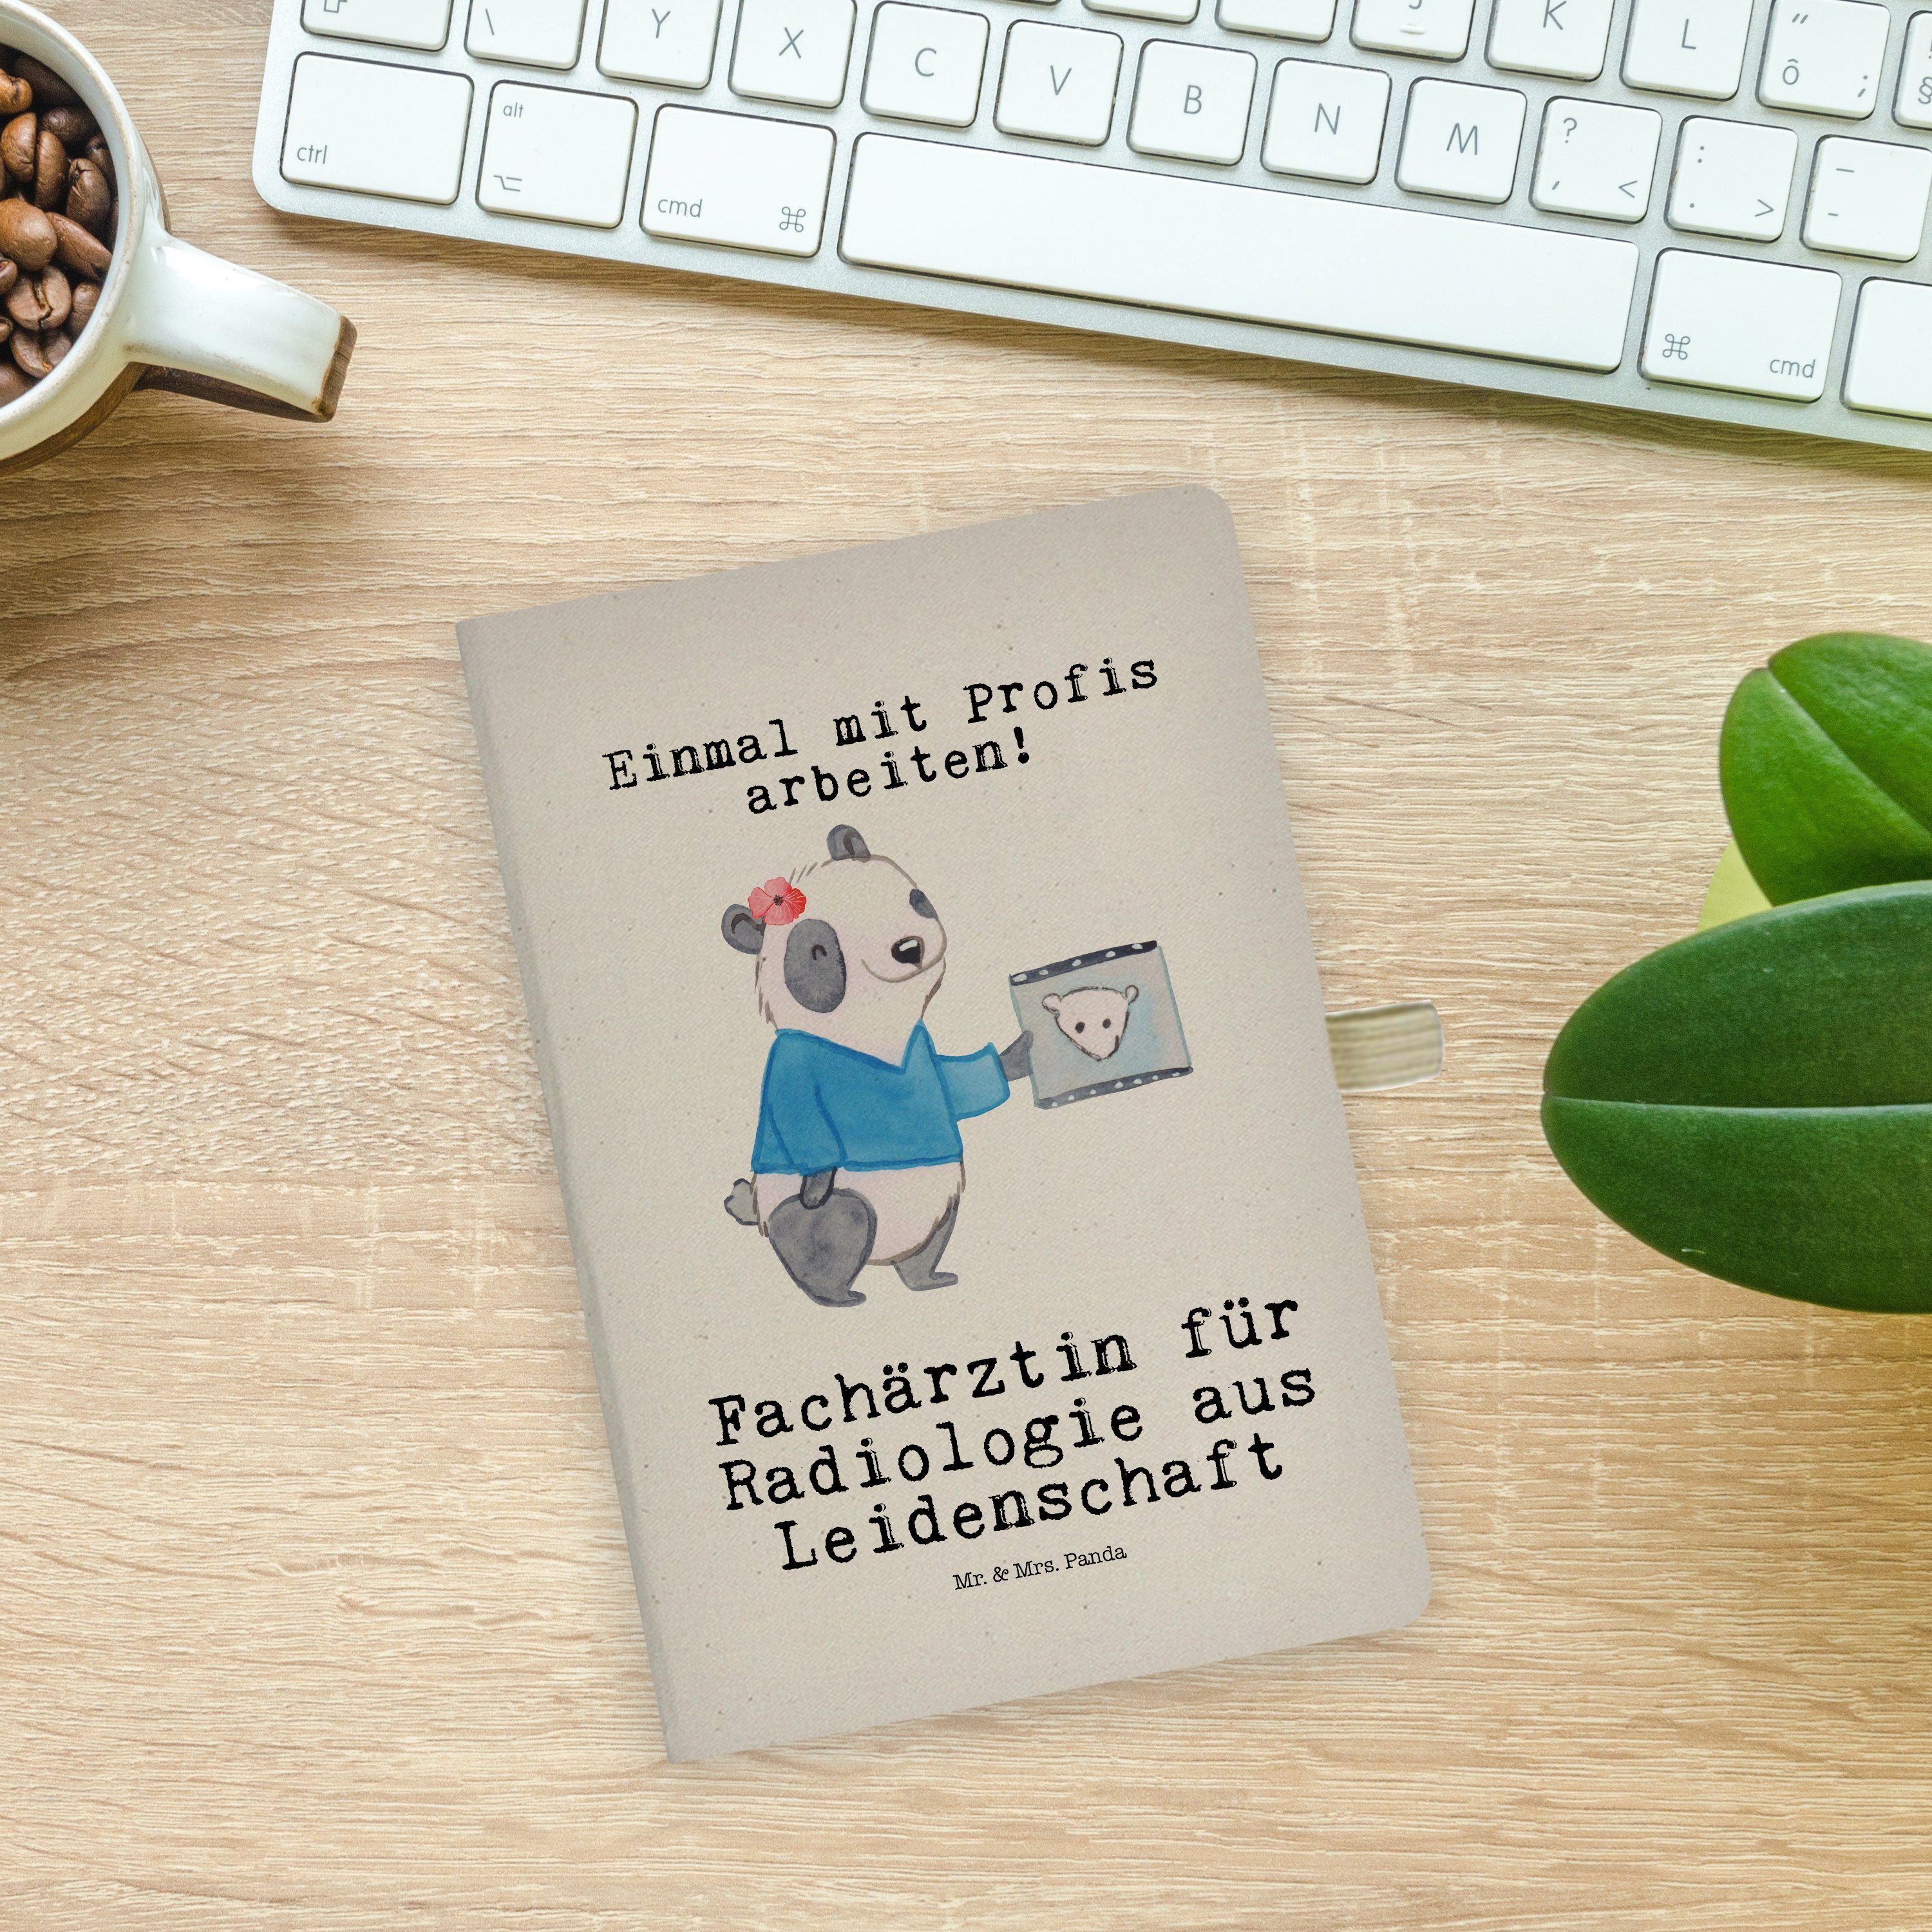 Mr. - Leidenschaft Panda & Mr. Panda Geschenk, & Transparent Fachärztin - Mrs. aus Notizbuch für Radiologie Mrs.